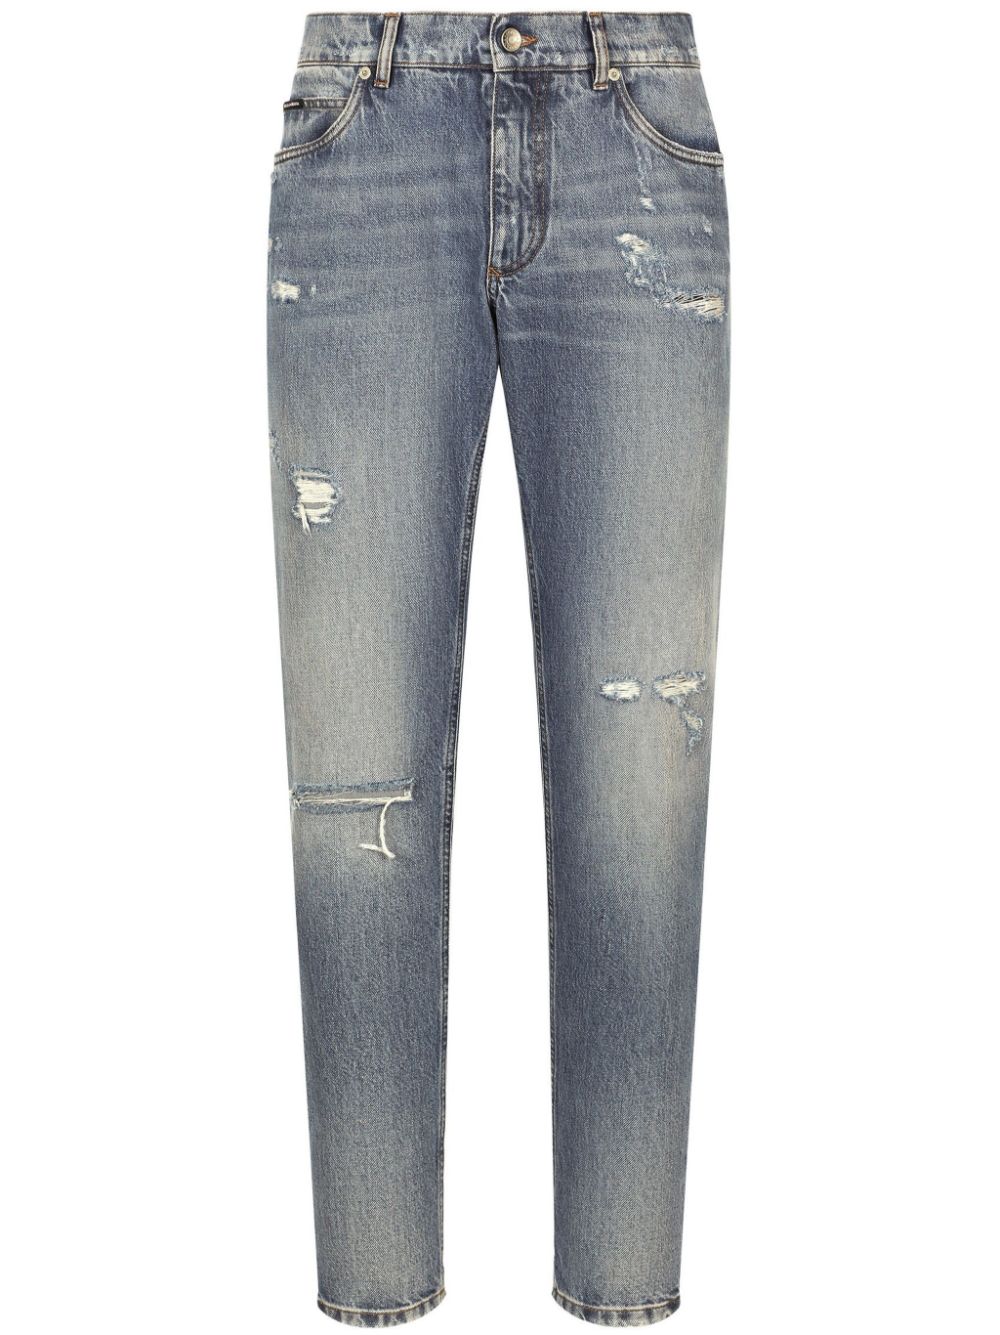 Quần jean straight-leg cotton nhẹ màu xanh nhạt cho nam